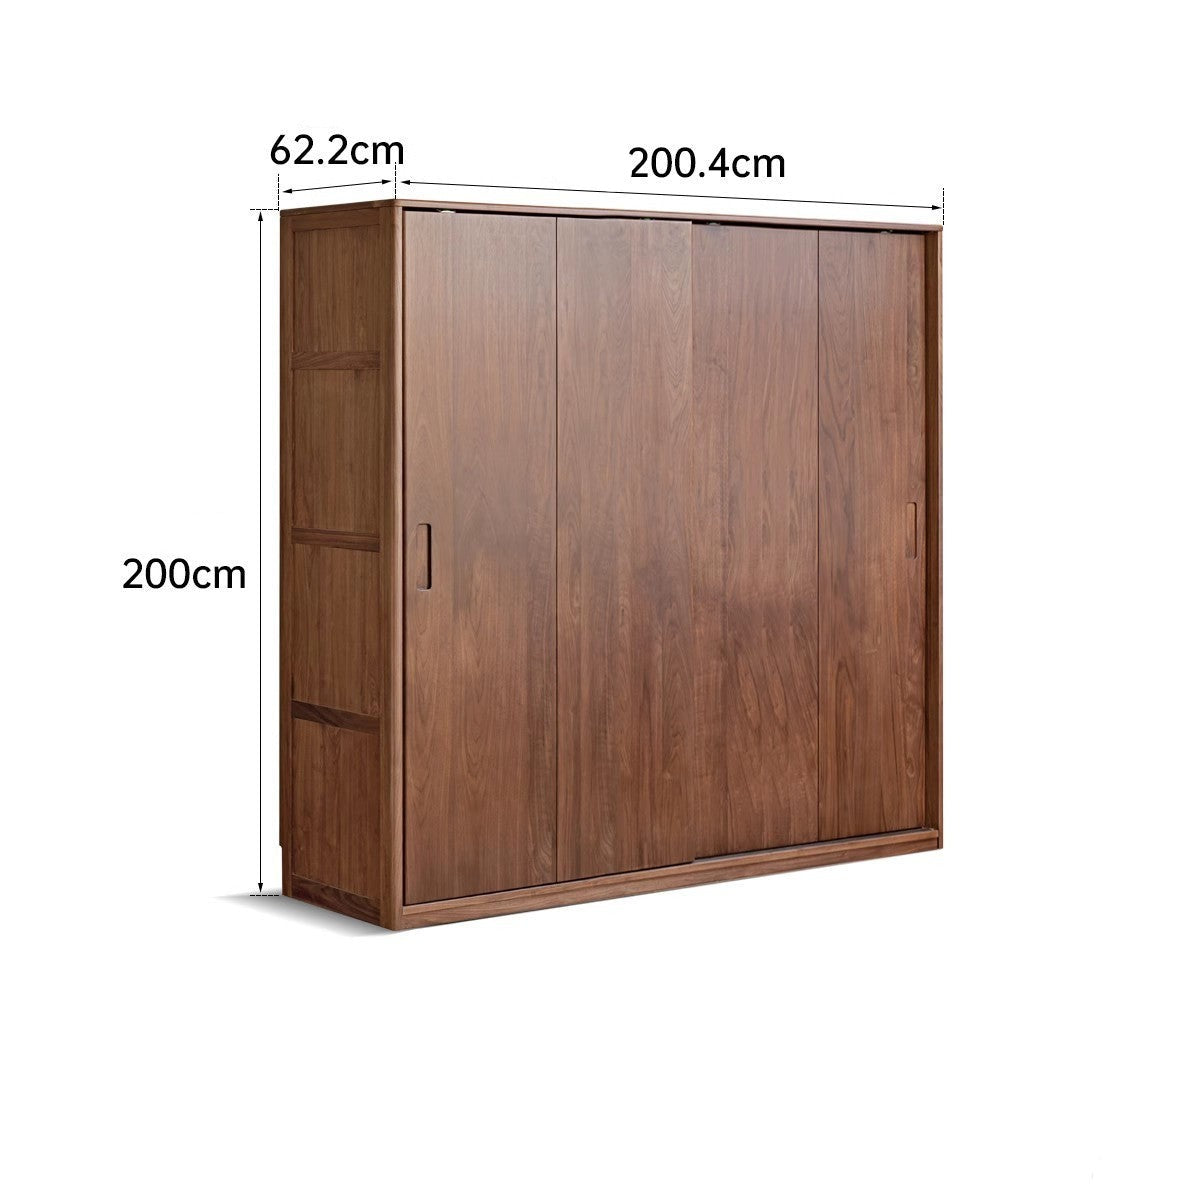 Black walnut solid wood sliding door wardrobe -